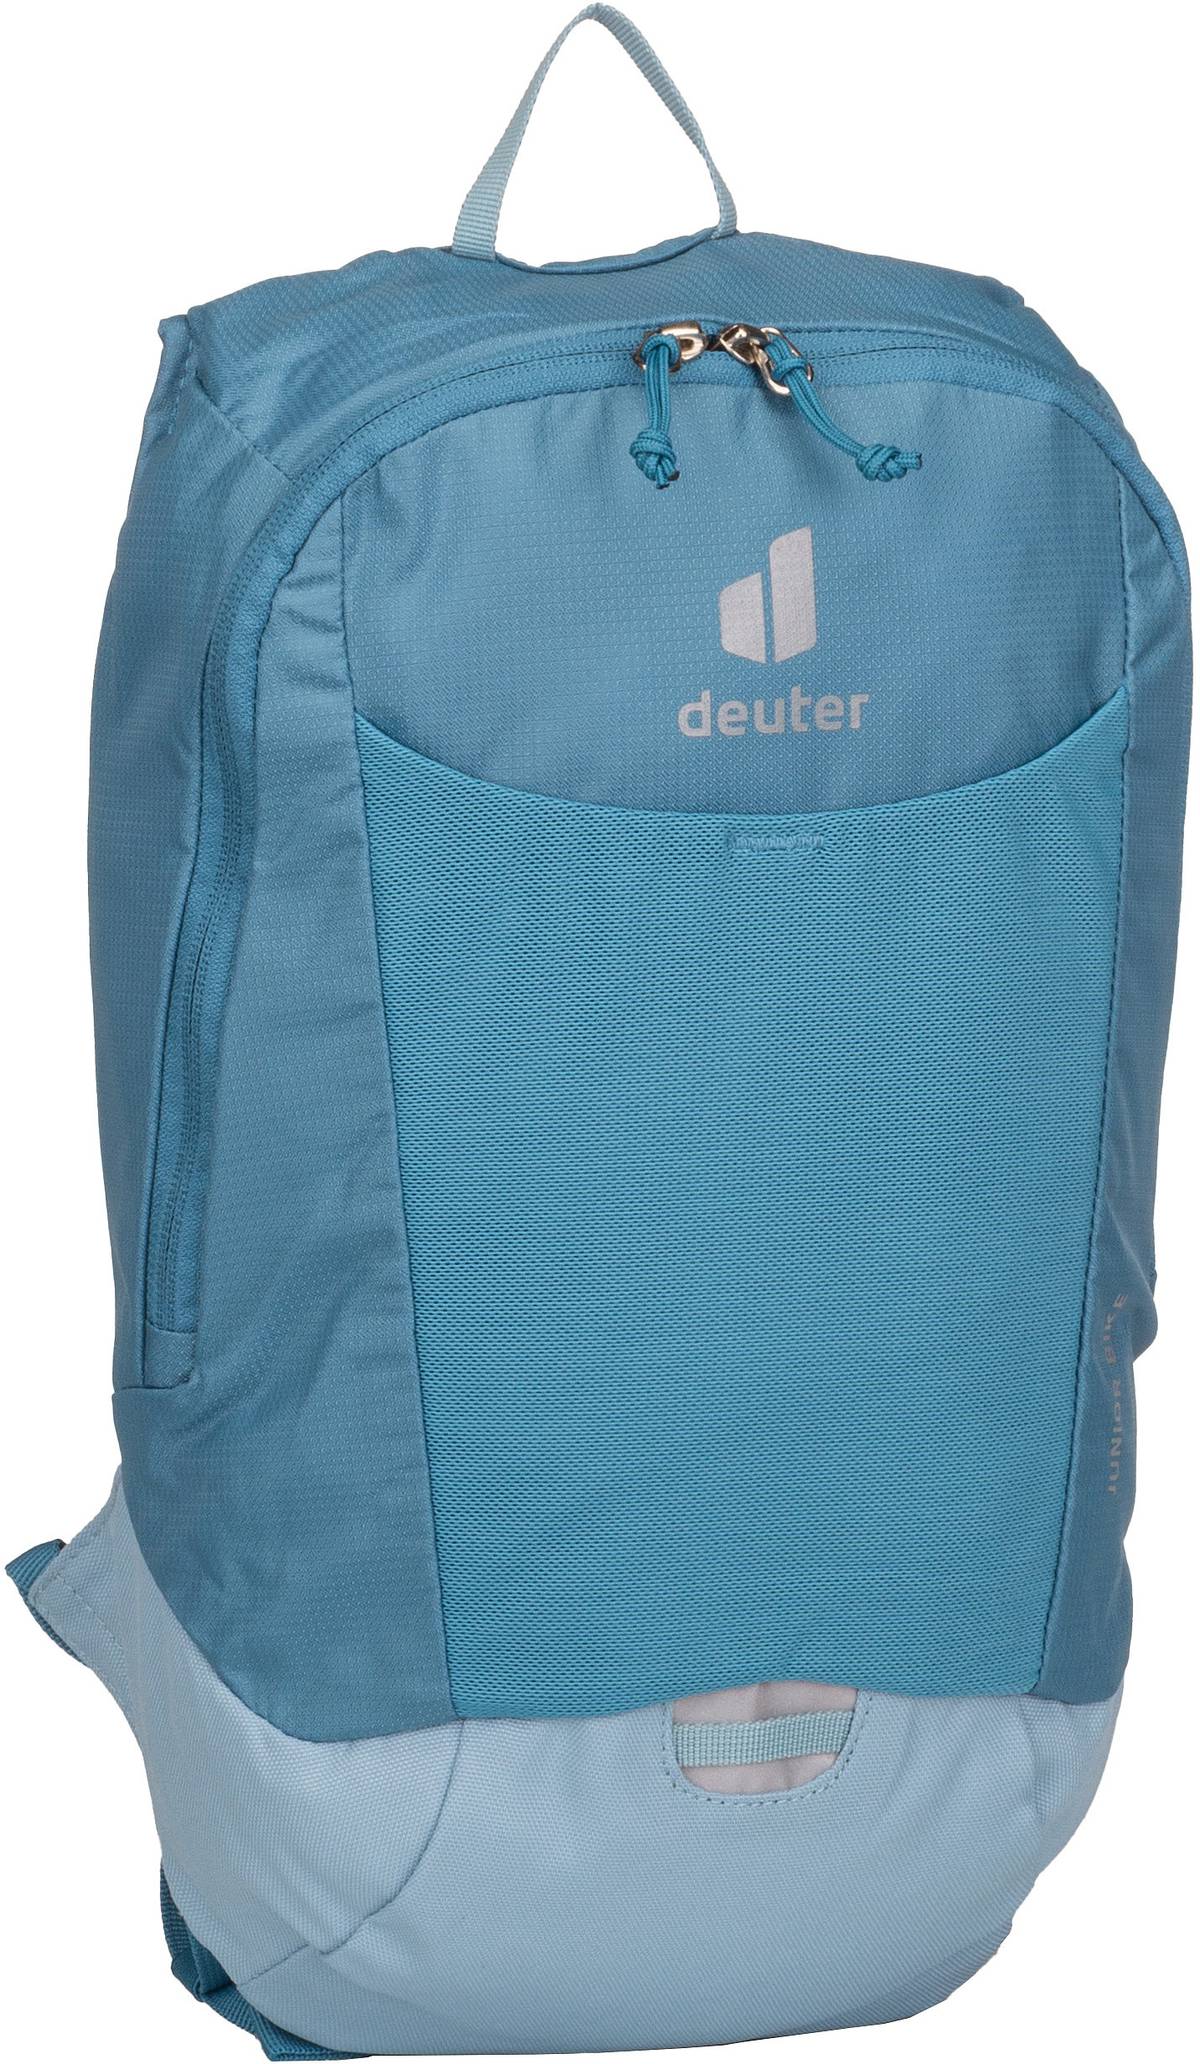 Deuter Junior Bike  in Blau (8 Liter), Rucksack / Backpack